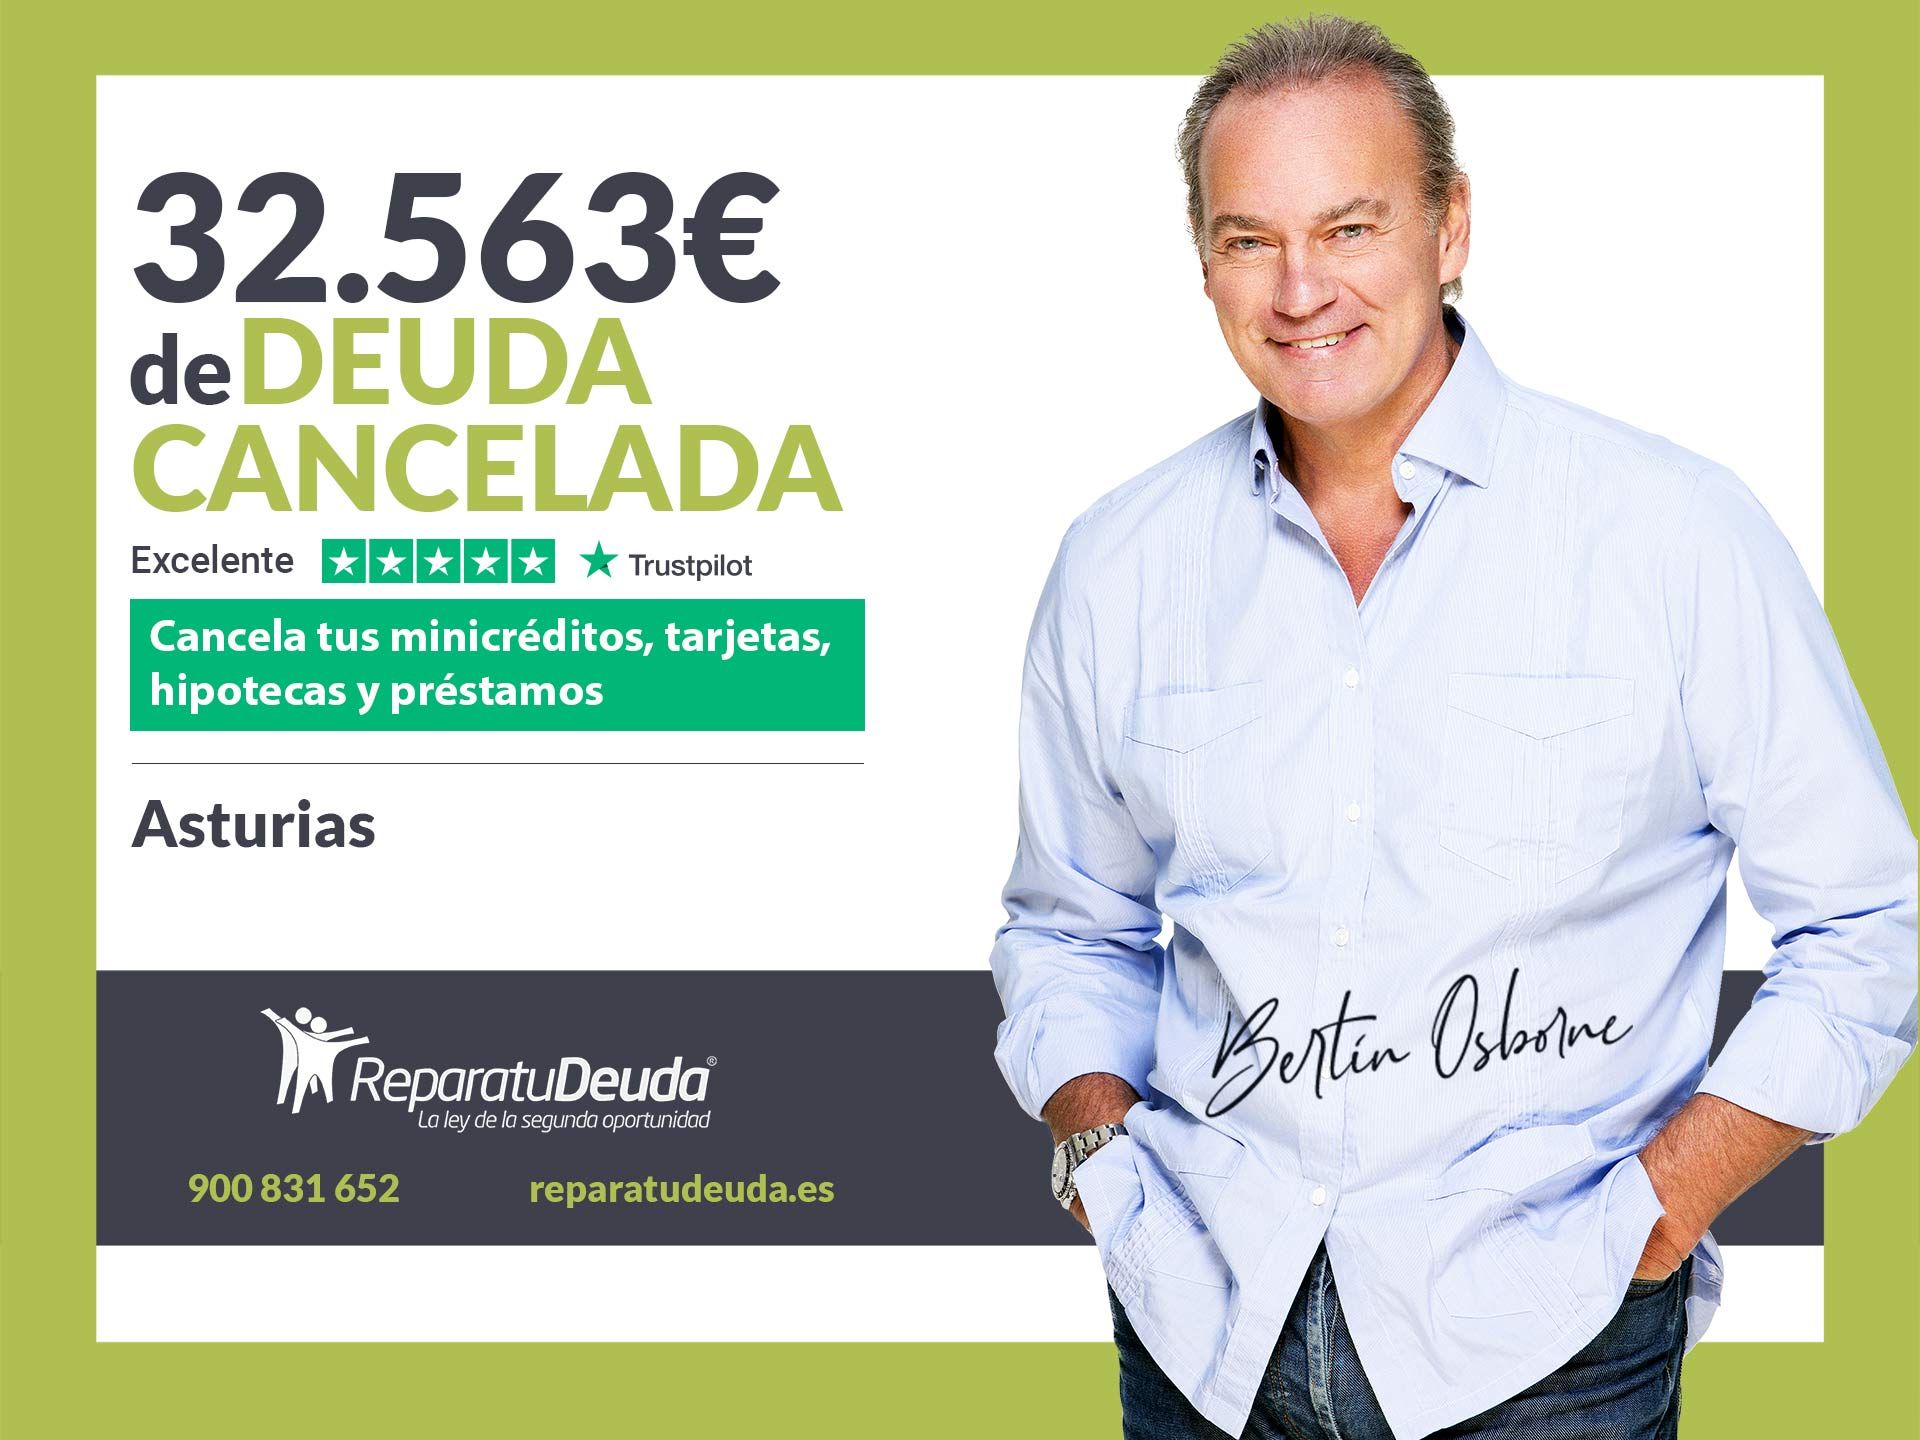 Repara tu Deuda Abogados cancela 32.563? en Asturias con la Ley de Segunda Oportunidad